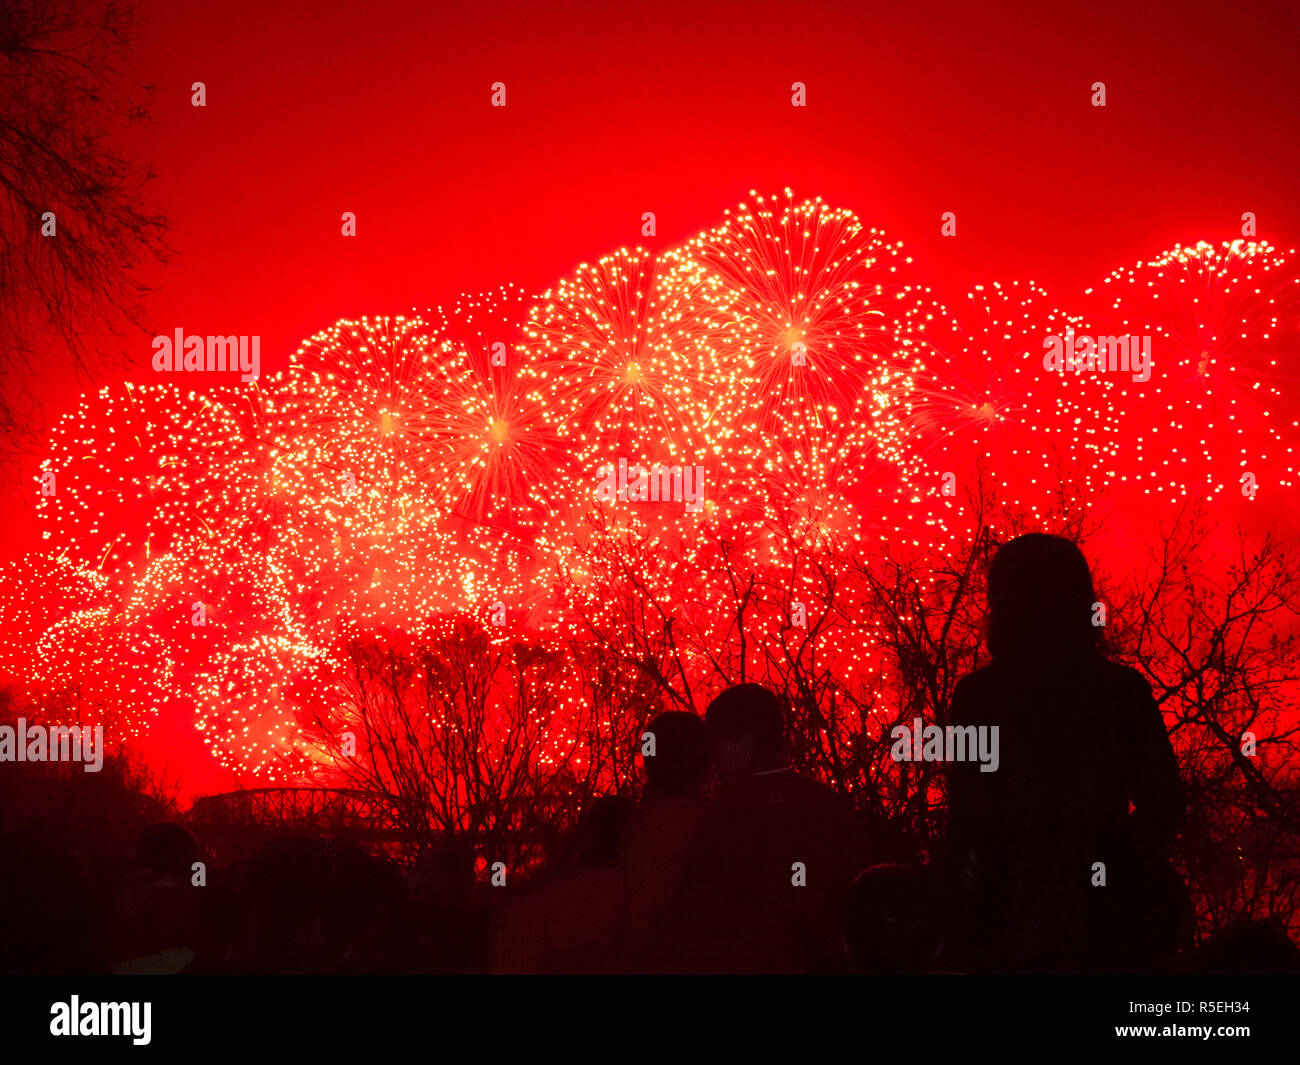 Die Demokratische Volksrepublik Korea (DVRK), Nordkorea, Pjöngjang, Feuerwerk, das 100-jährige Jubiläum der Geburt des Präsidenten Kim Il Sung feiern - 15. April 2012 Stockfoto